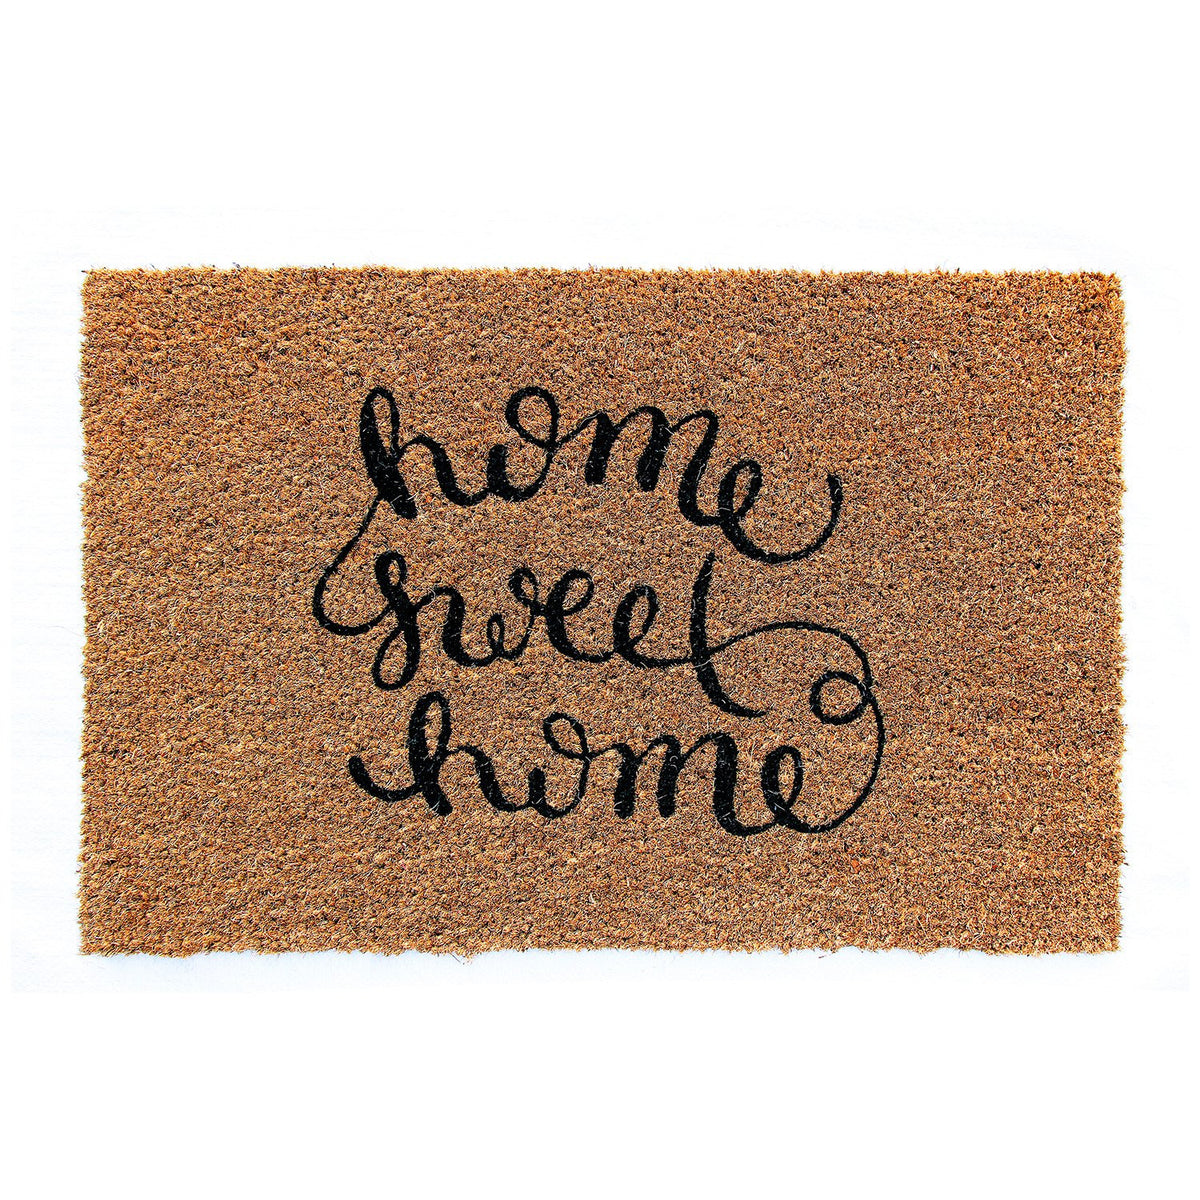 Elegant Handwritten "Home Sweet Home" Printed Natural Coir Floor Mat - OnlyMat